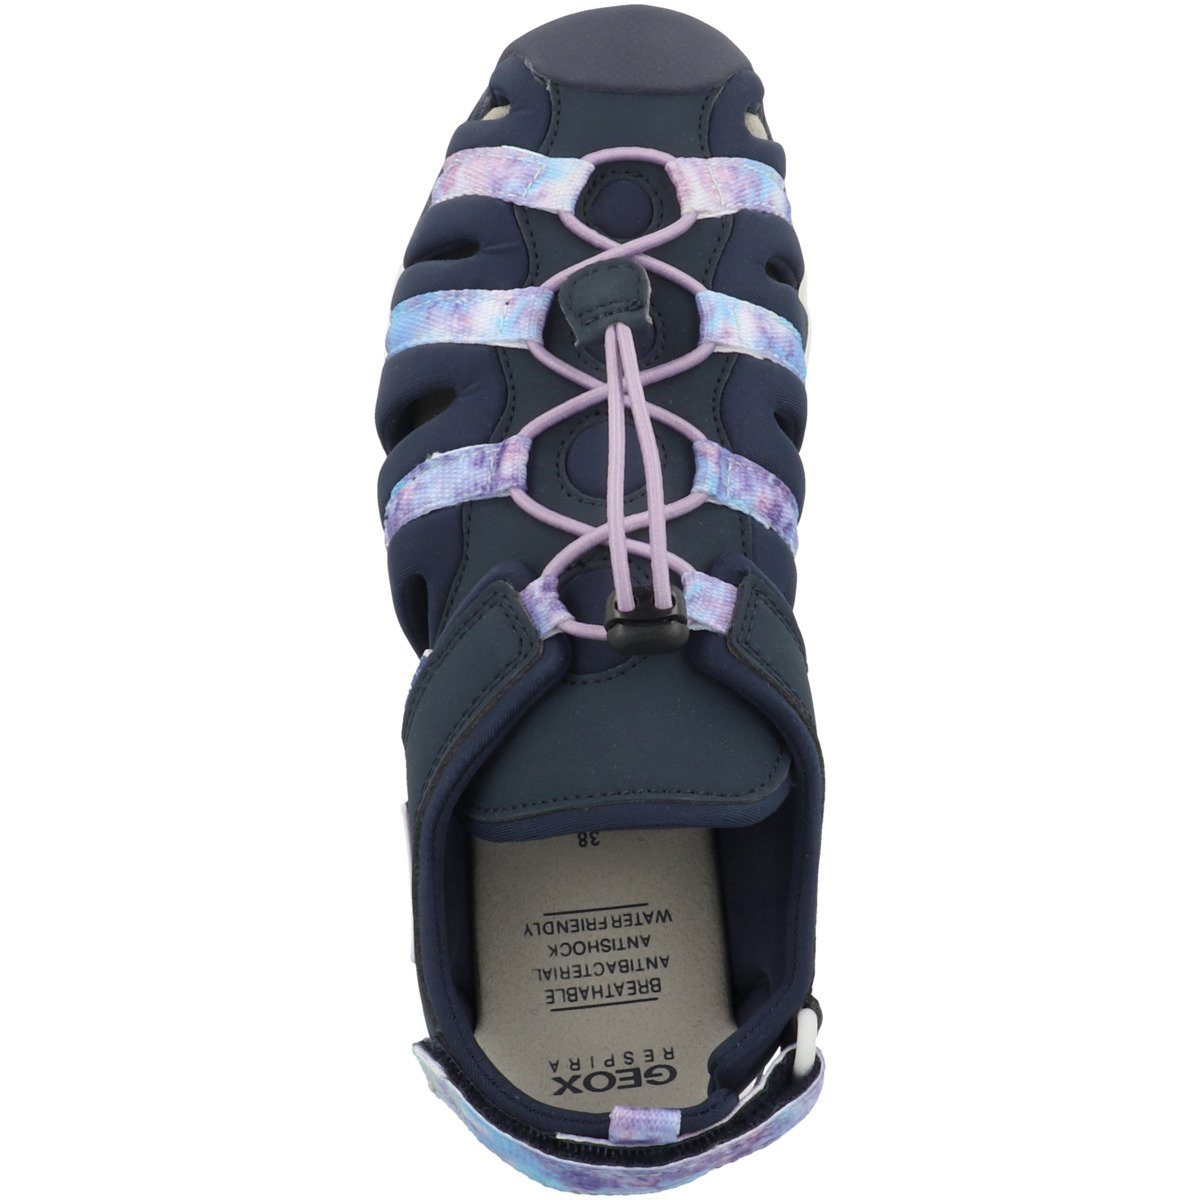 Geox G. A Anti-Shock-Fußbett Borealis Sandale, Mädchen J bietet – Dämpfung optimale